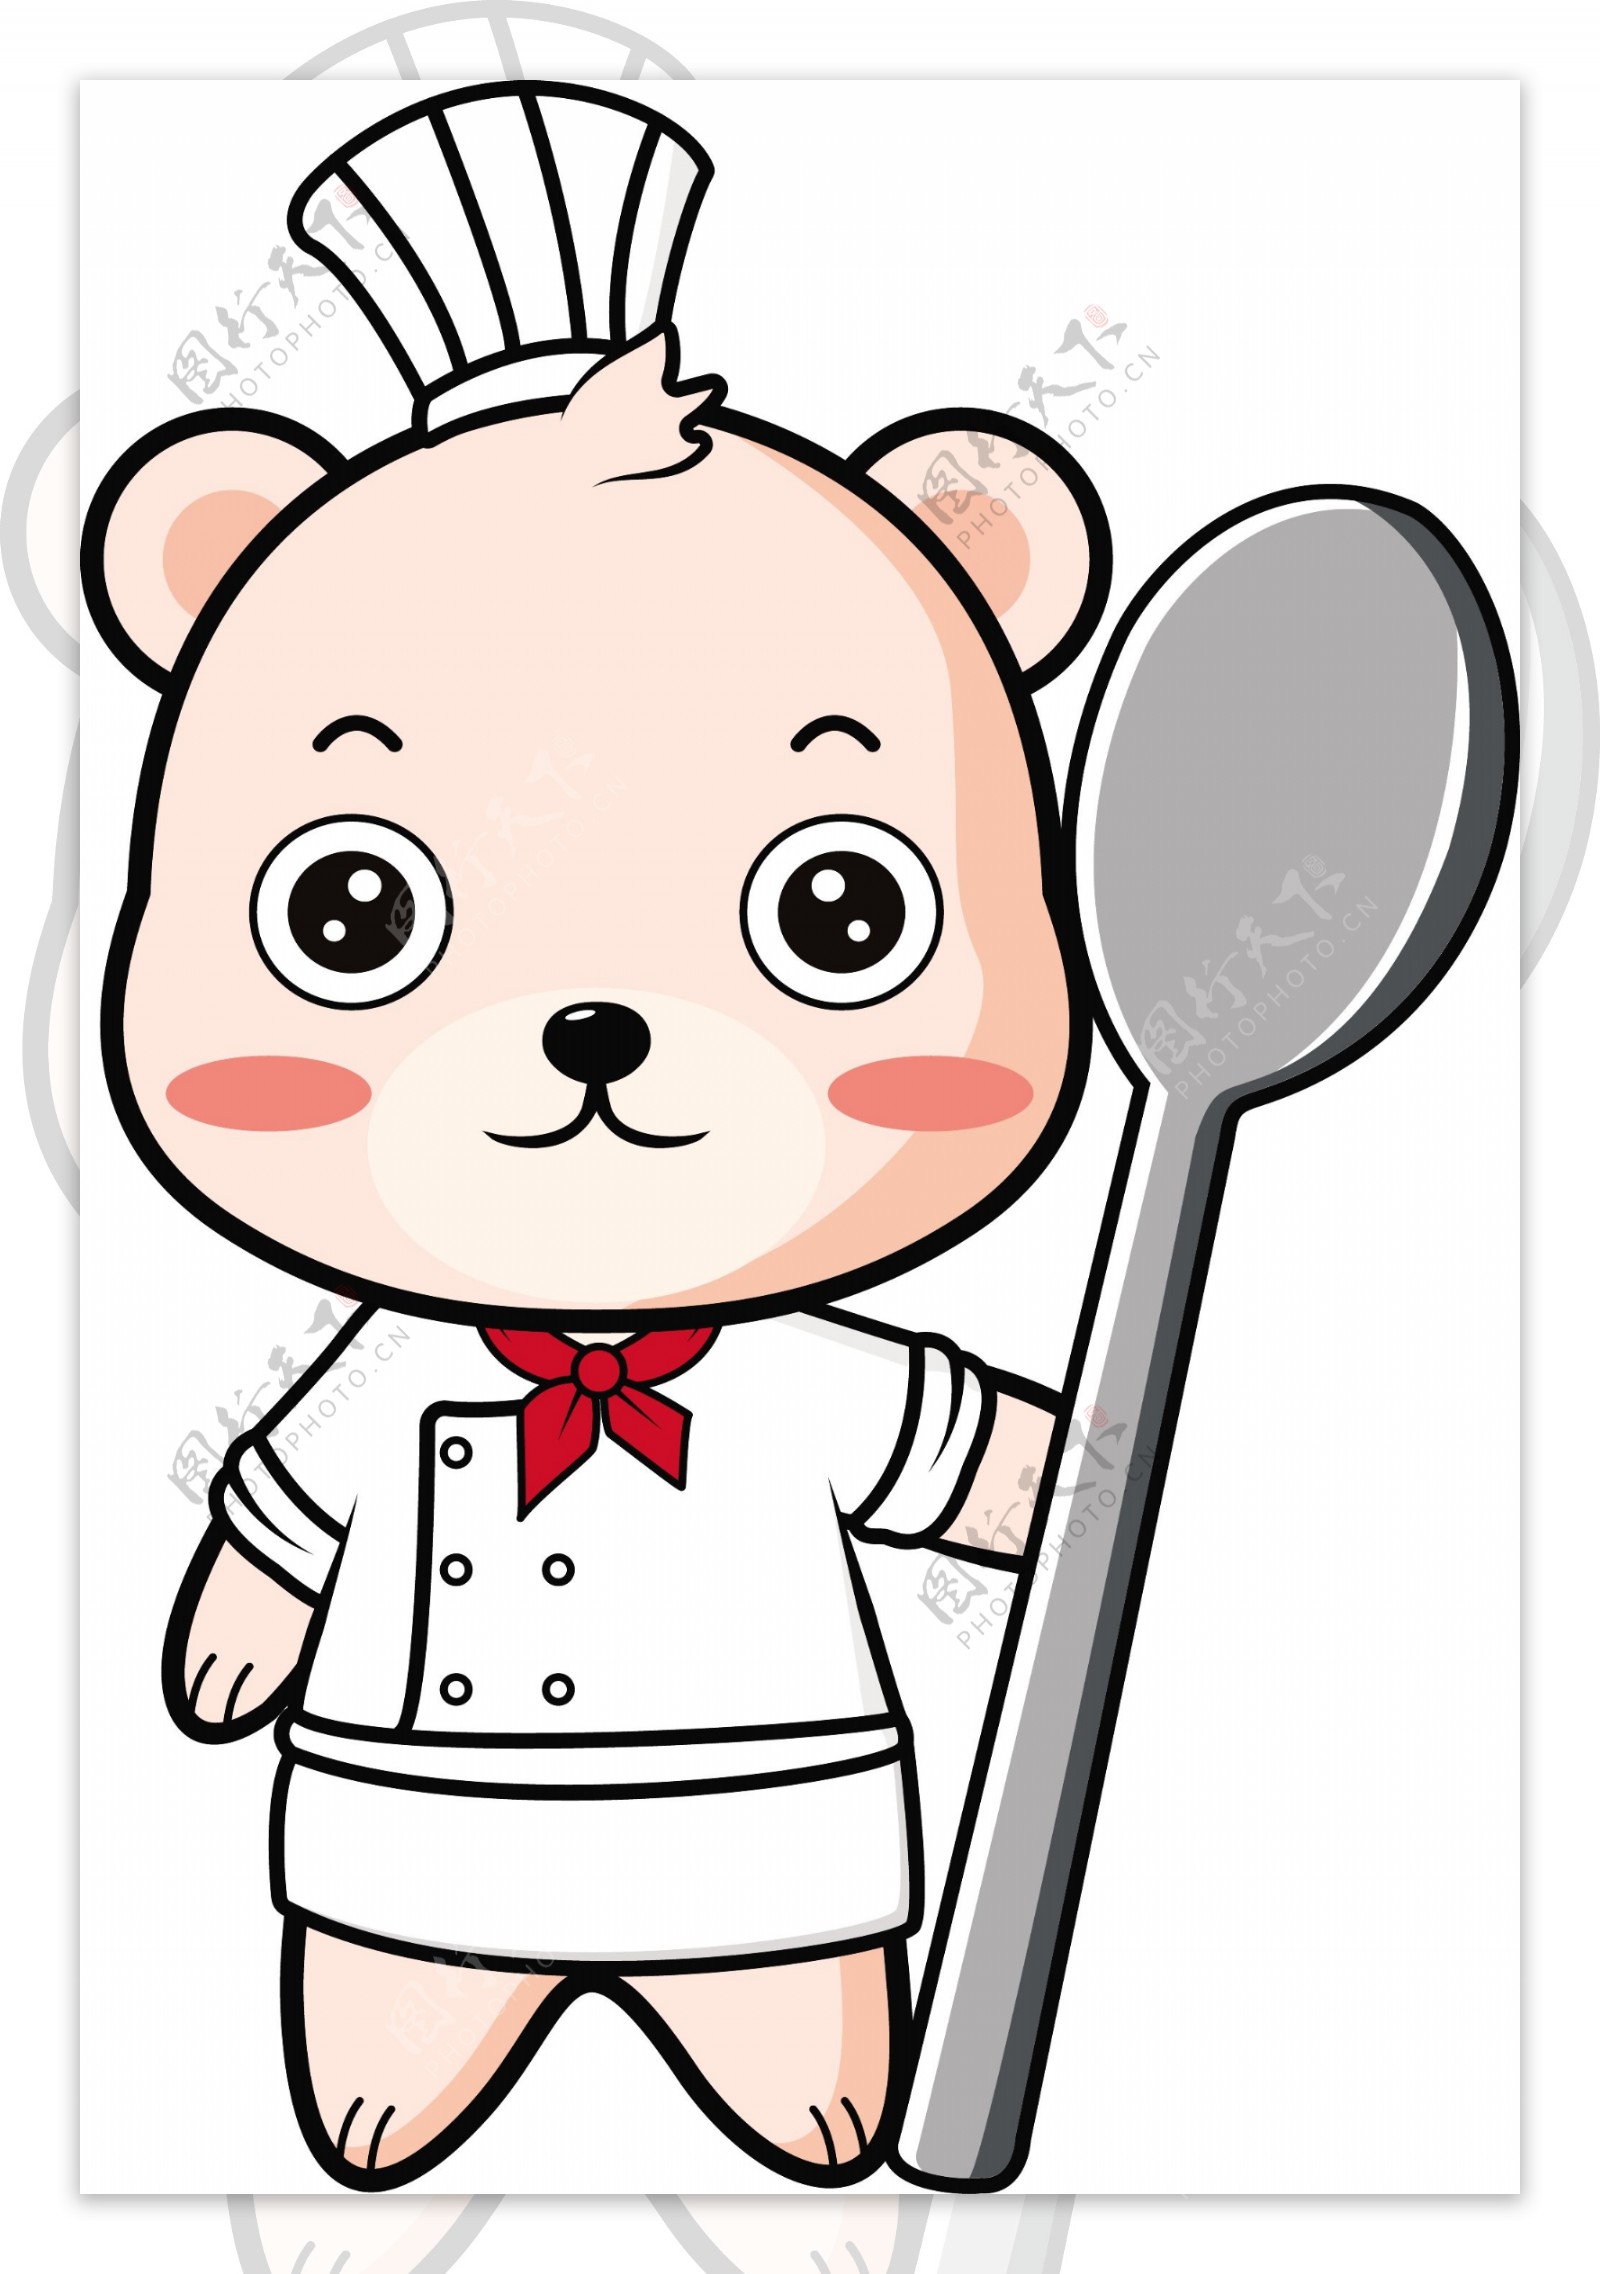 厨师熊卡通形象设计